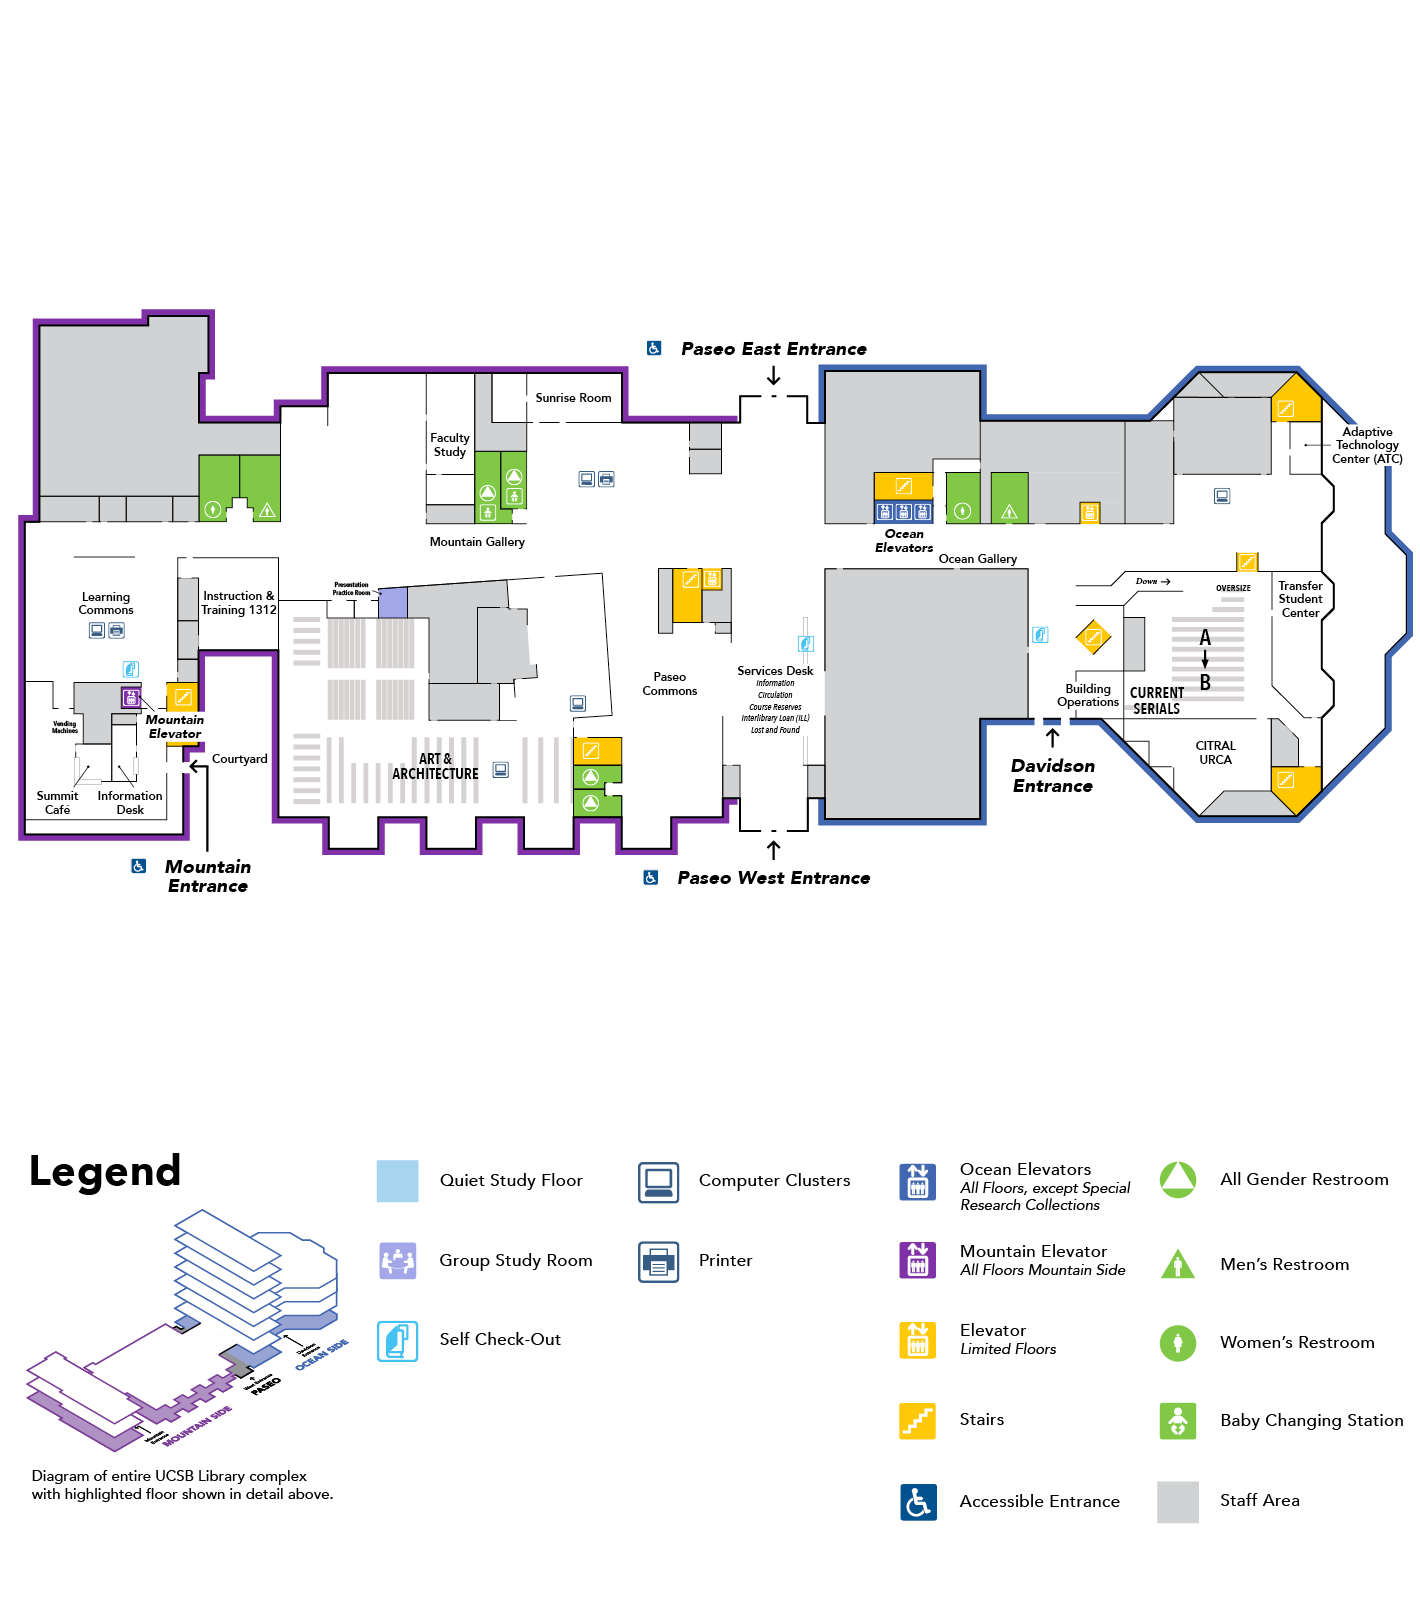 map of floor 1